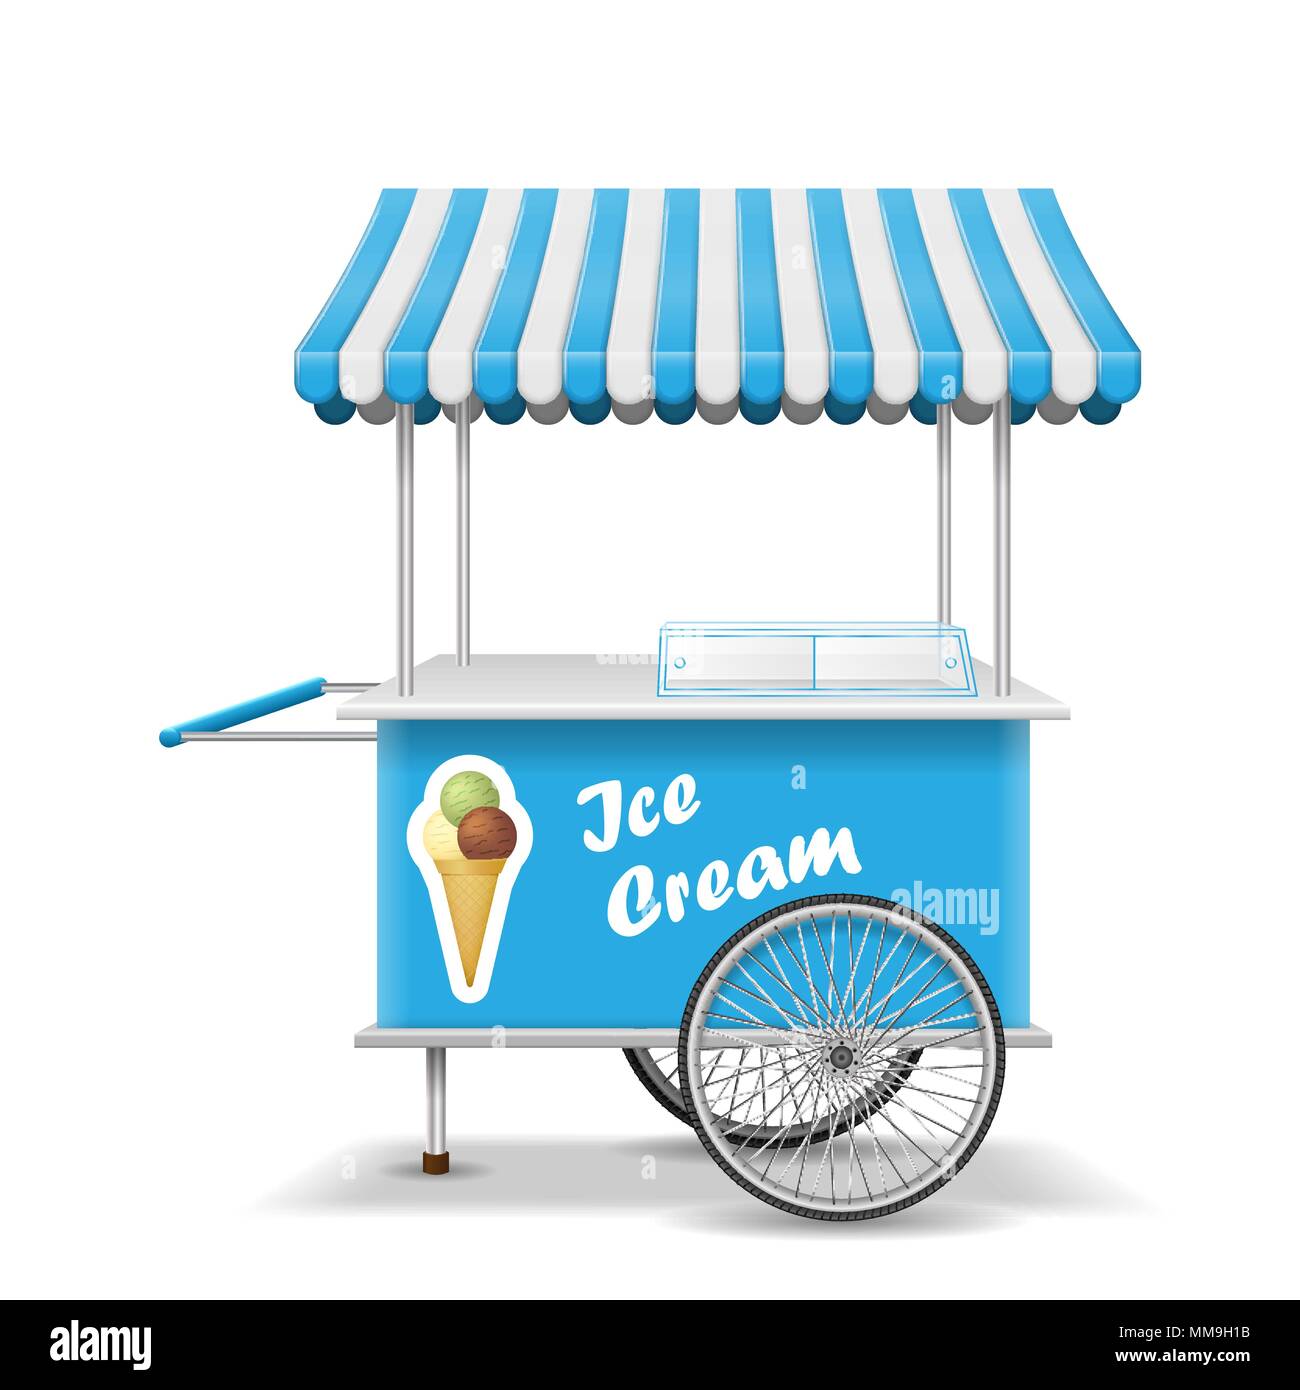 Realistische Street Food Warenkorb mit Rädern. Mobile Blue Ice Cream markt Vorlage abgewürgt. Markt für Speiseeis Warenkorb mockup. Vector Illustration Stock Vektor